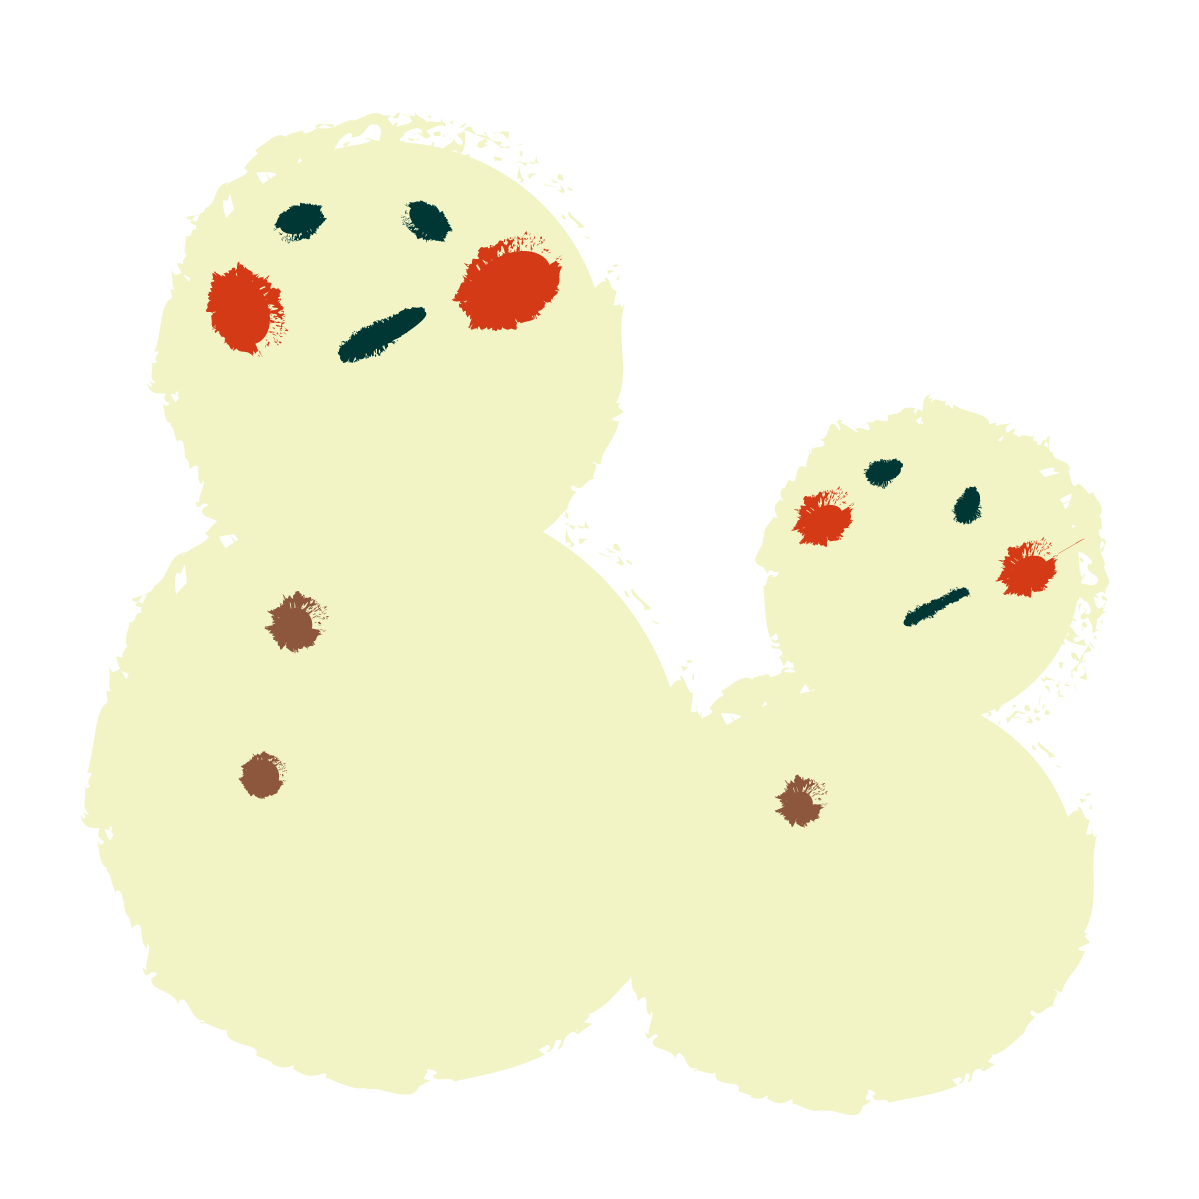 ぴったりくっつく2体の雪だるまが可愛い。赤いホッペとゆるい表情も可愛いです♪